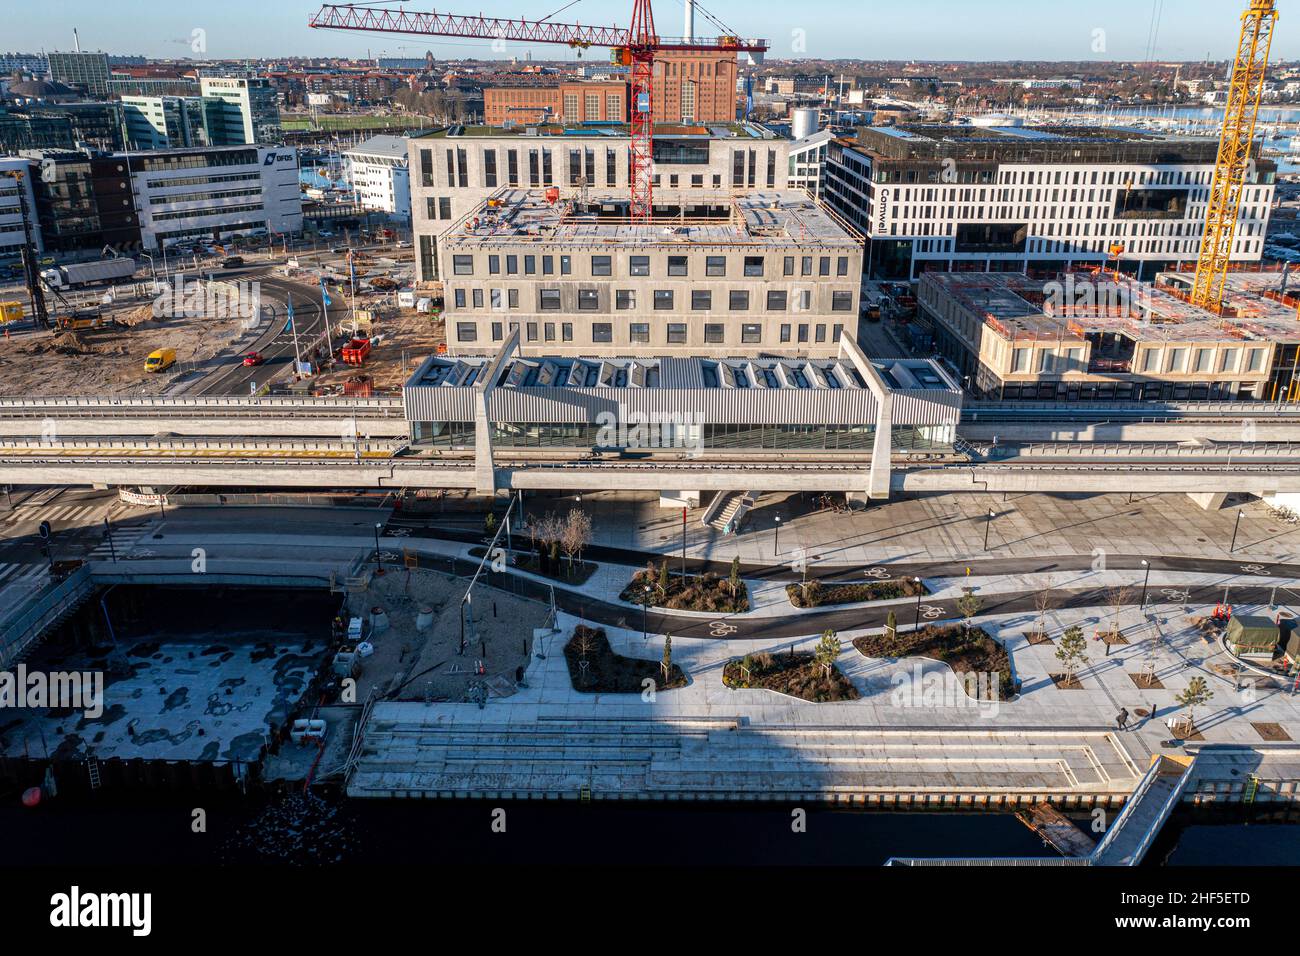 Vue aérienne de la station de métro Orientkaj à Copenhague Banque D'Images